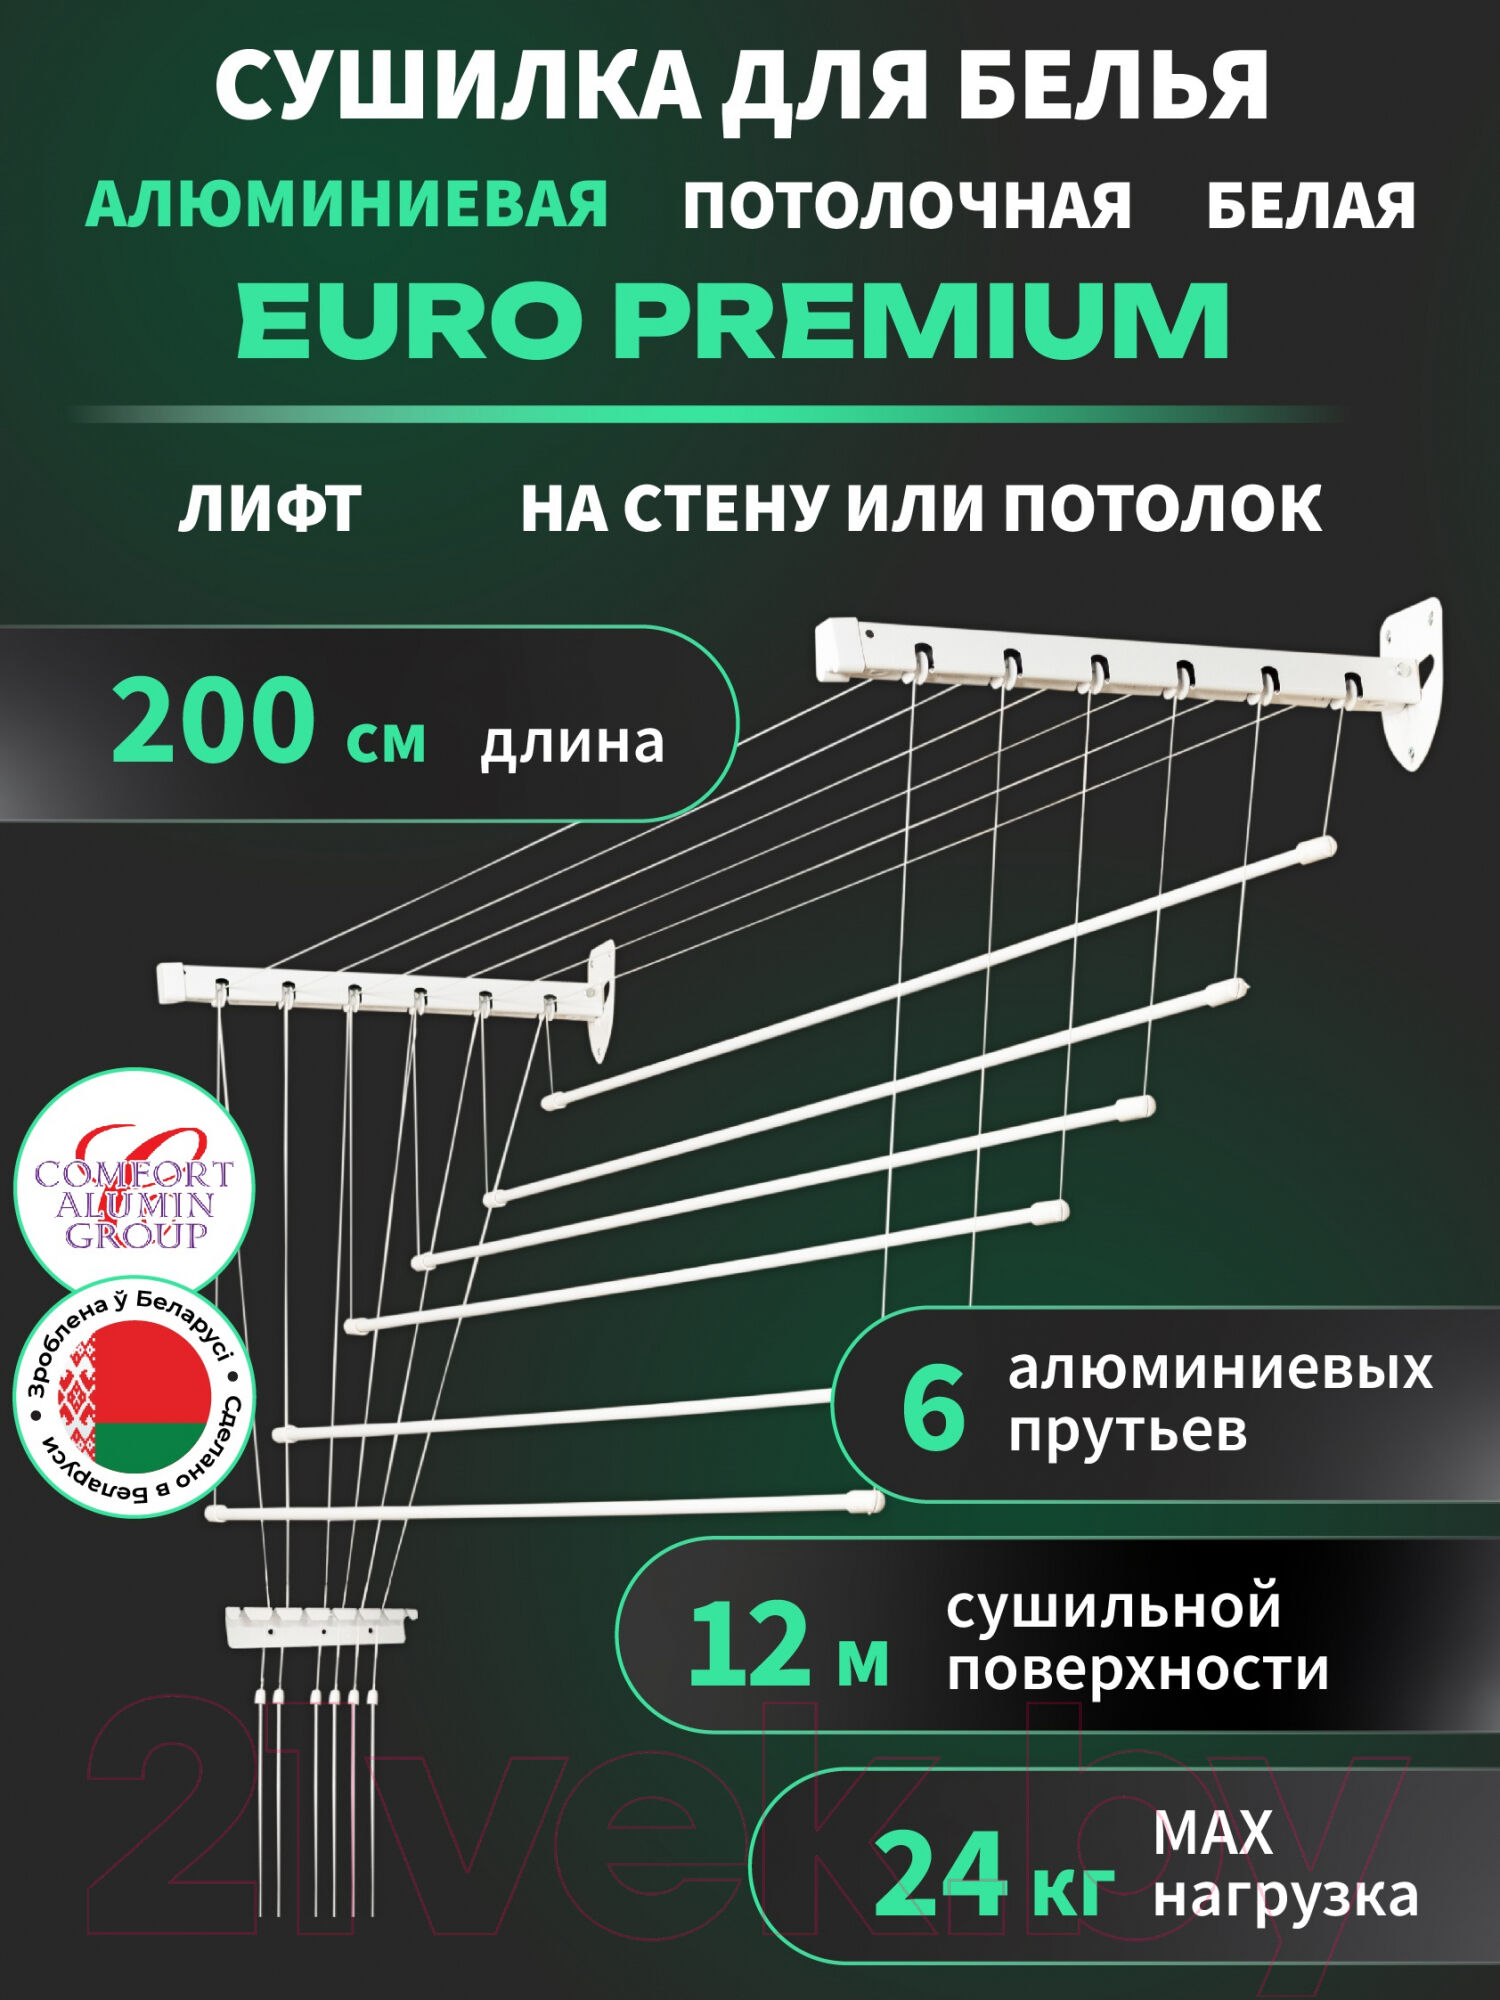 Сушилка для белья Comfort Alumin Group Euro Premium Потолочная 6 прутьев 200см Лифт 2